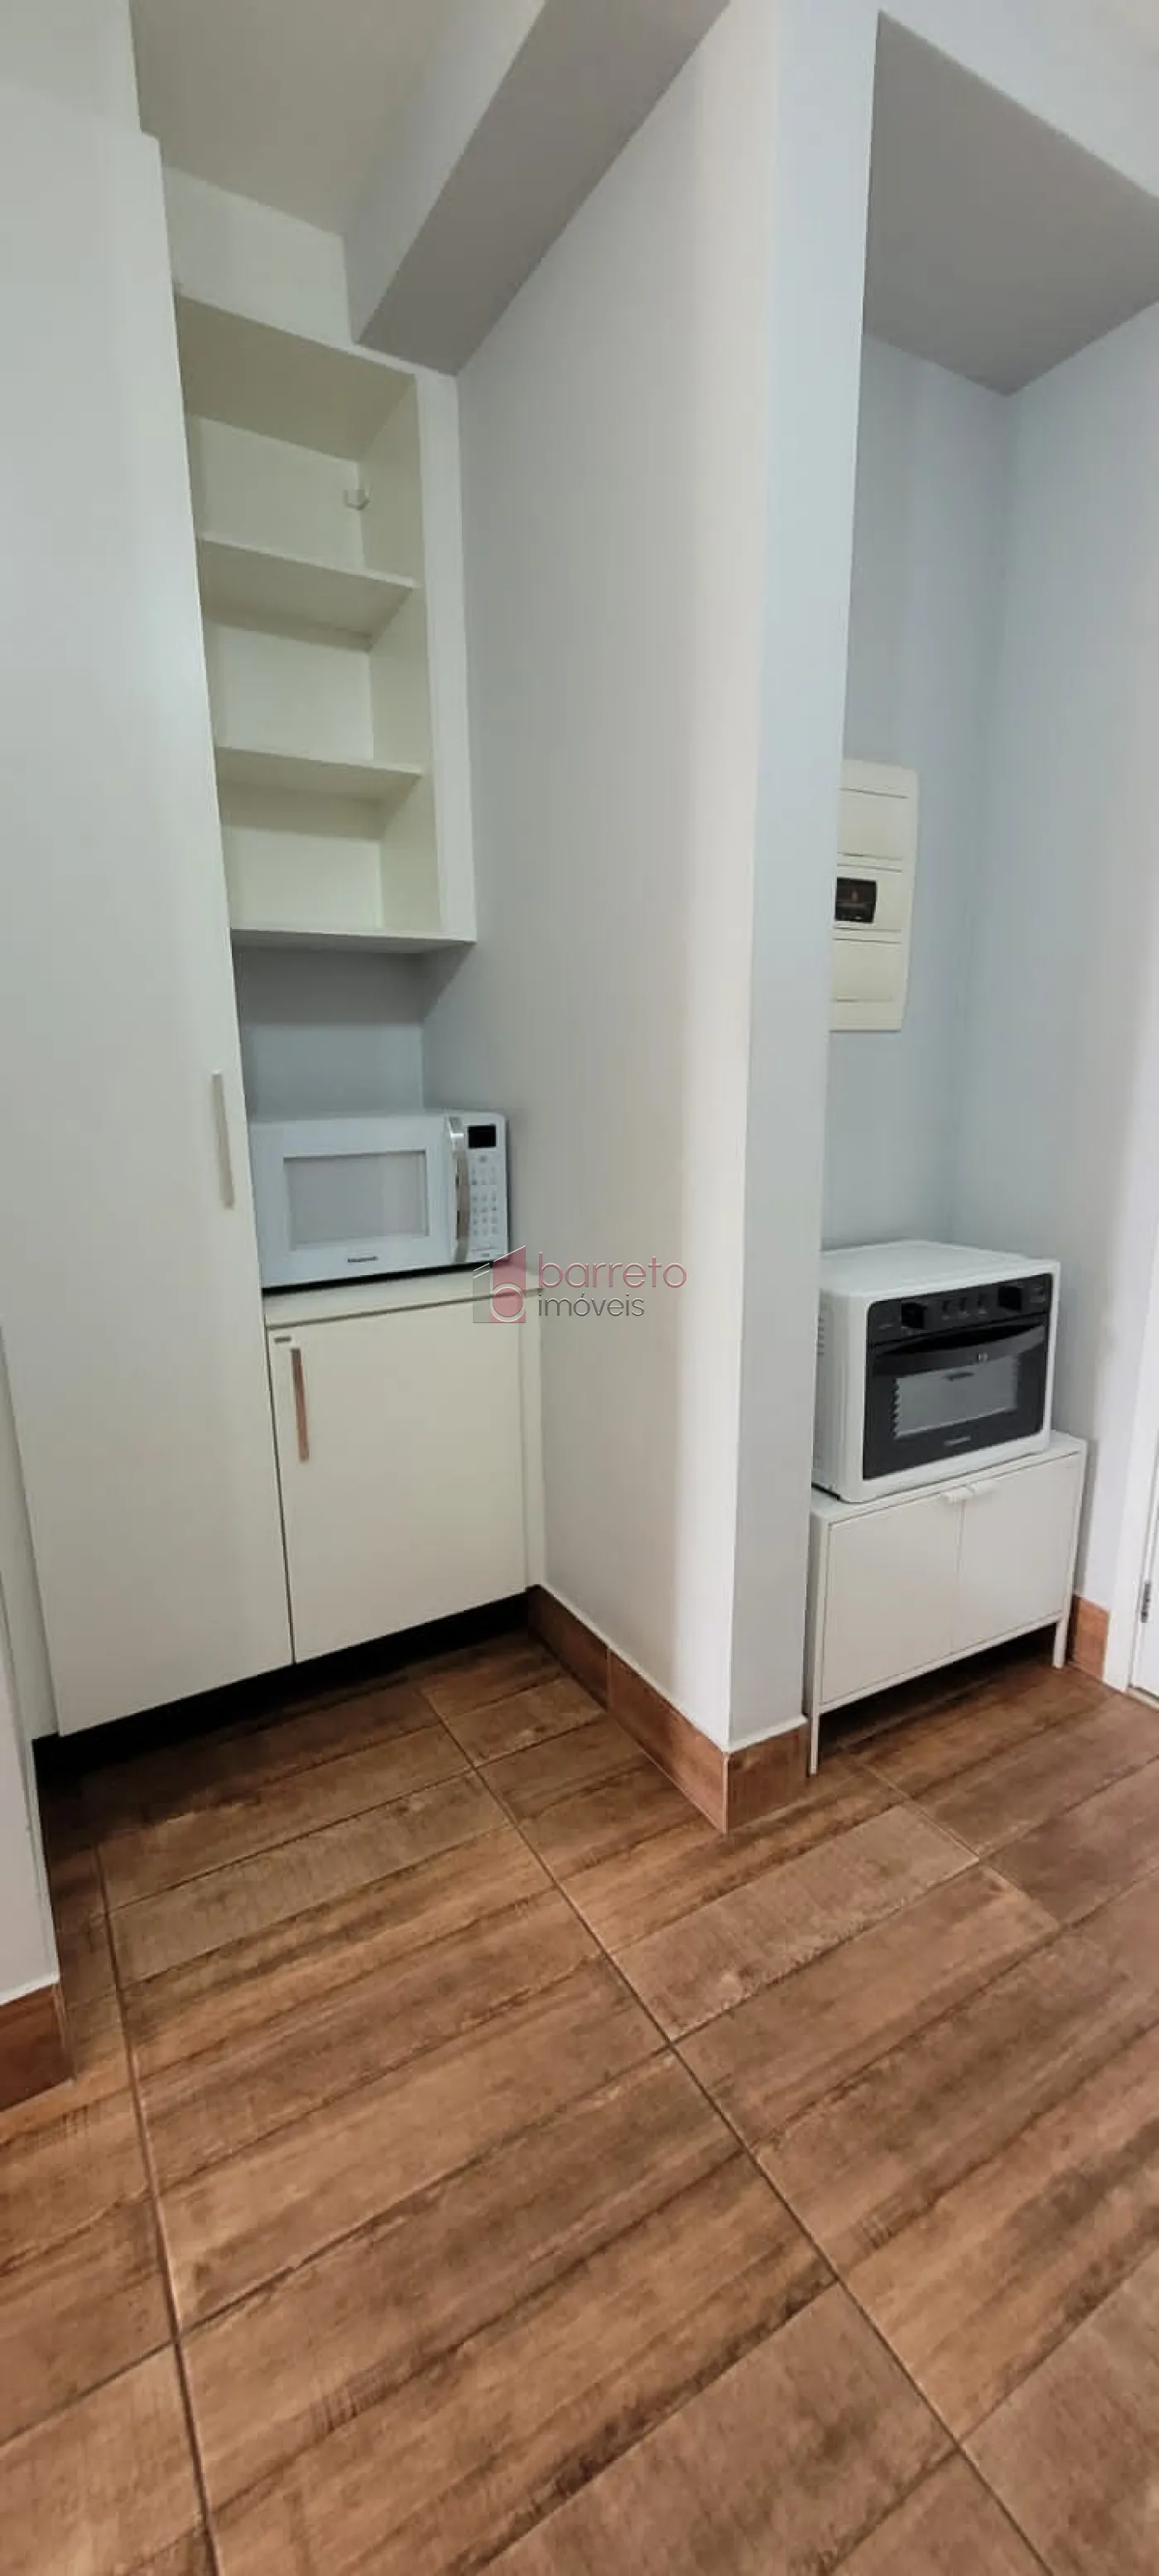 Alugar Apartamento / Flat em Jundiaí R$ 2.800,00 - Foto 3